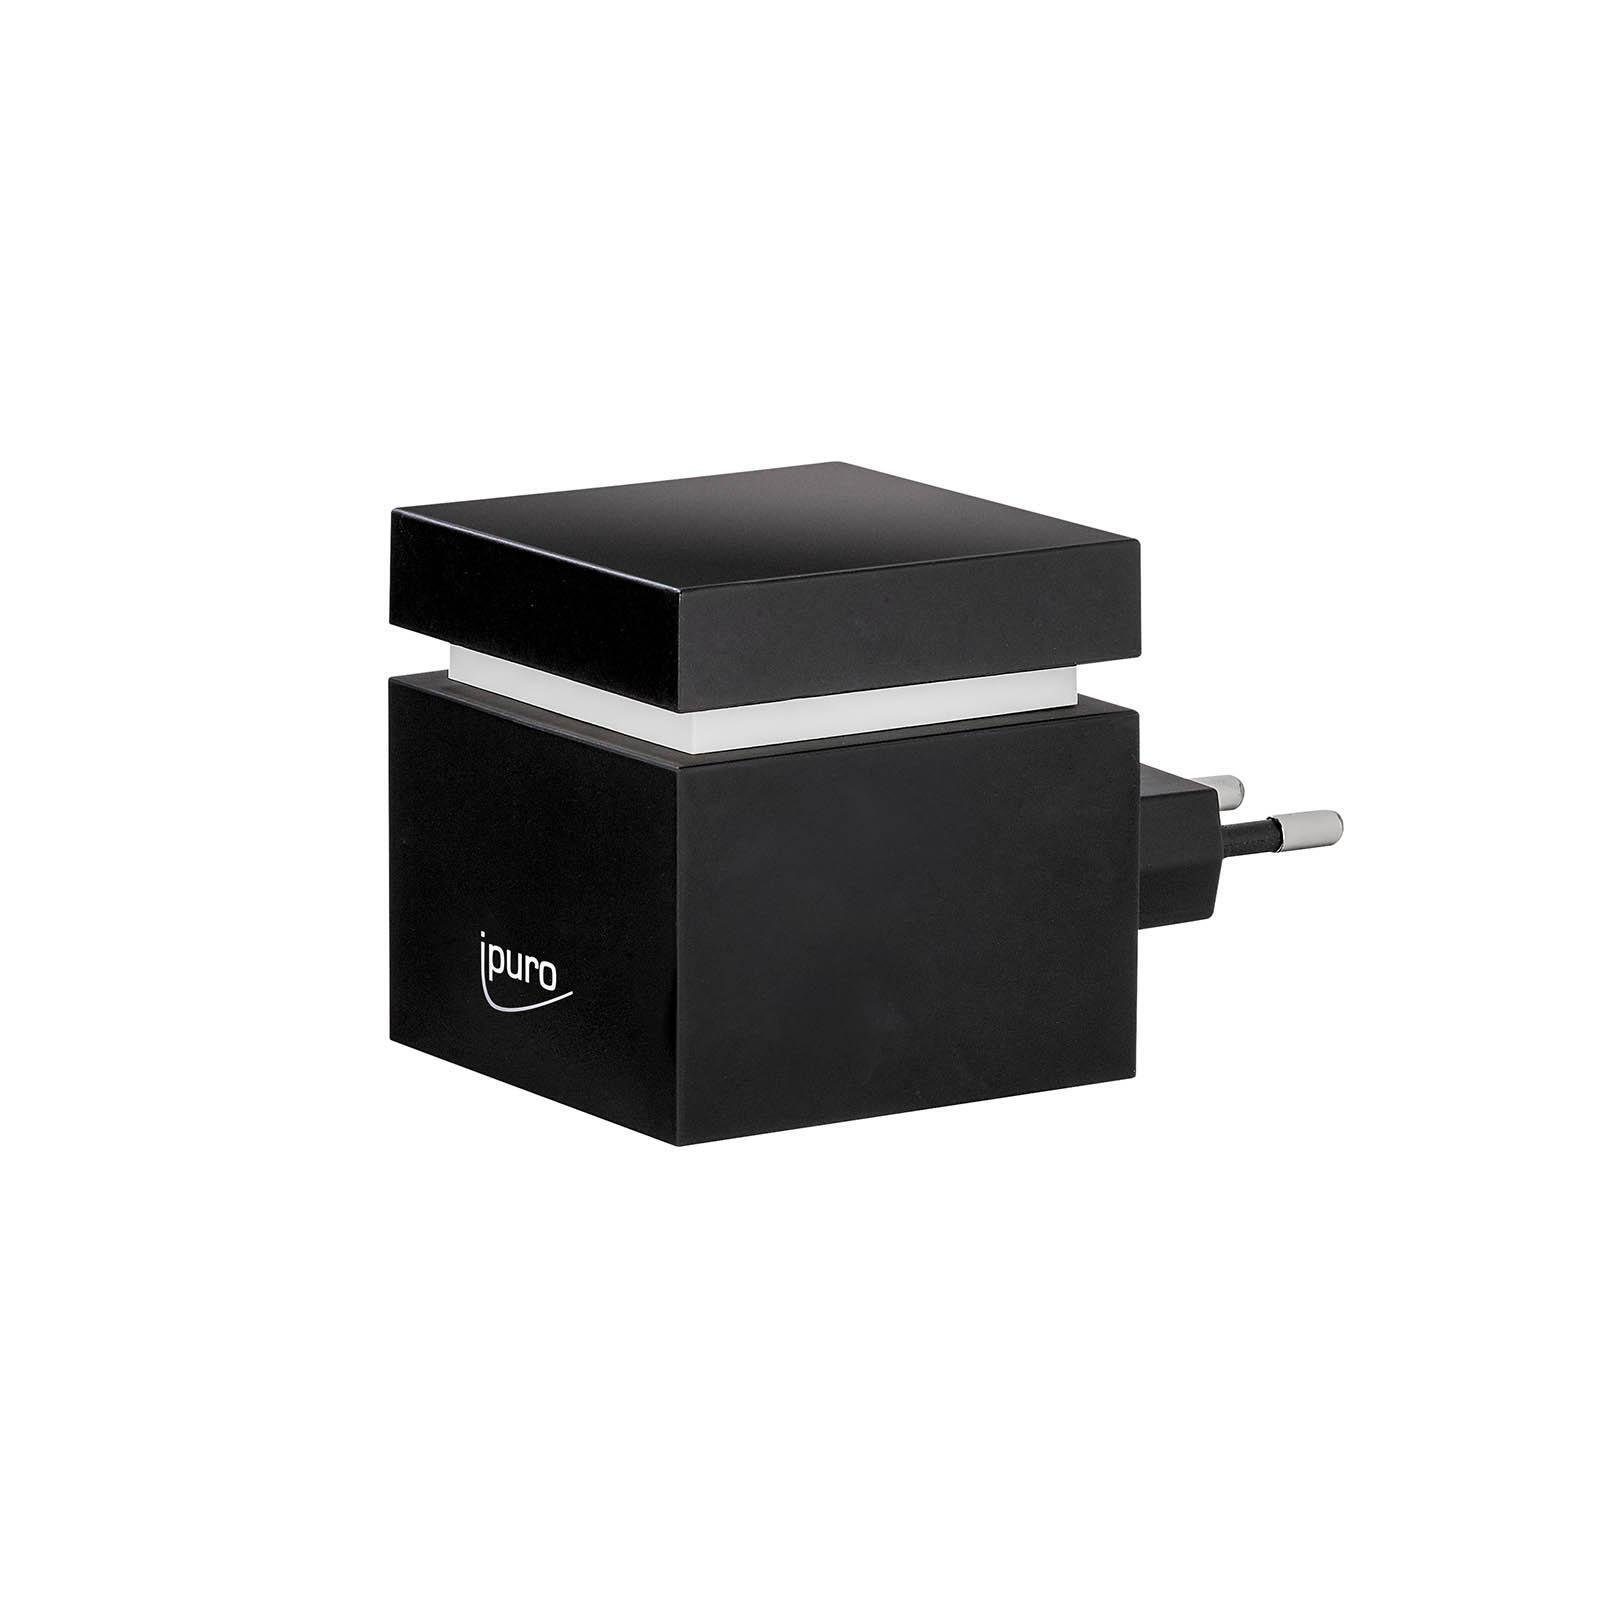 IPURO Duftlampe Elektrischer Aroma-Diffusor Plug-in Cube (Packung, 1 St., 1 Stück Elektrischer Aroma-Diffusor Plug-in Cube), aus Aroma-Diffusor, B 5.5 Zentimeter, H 9.3 Zentimeter, T 5.5 Zentimeter